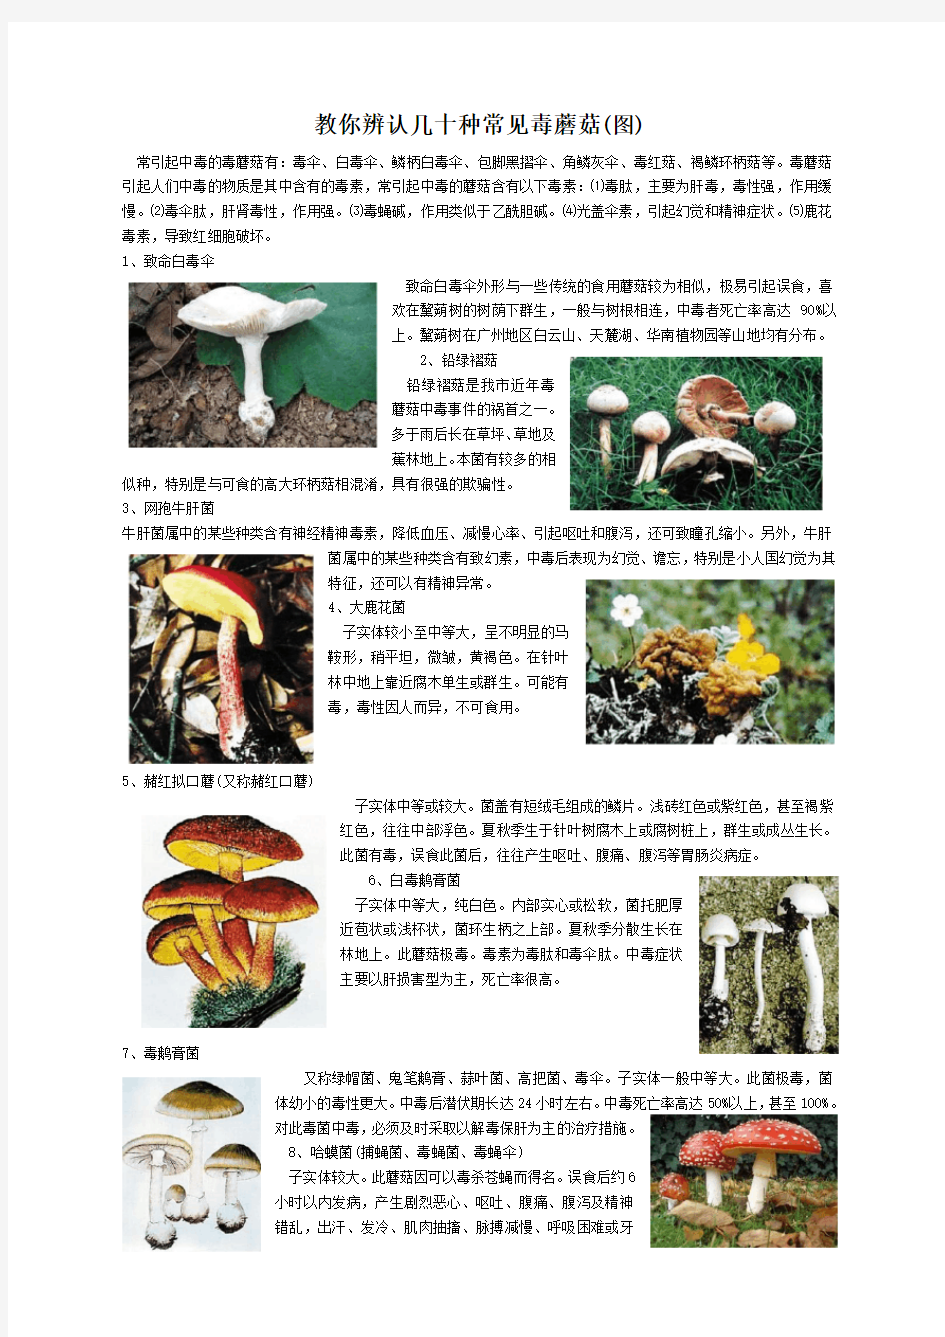 教你辨认几十种常见毒蘑菇